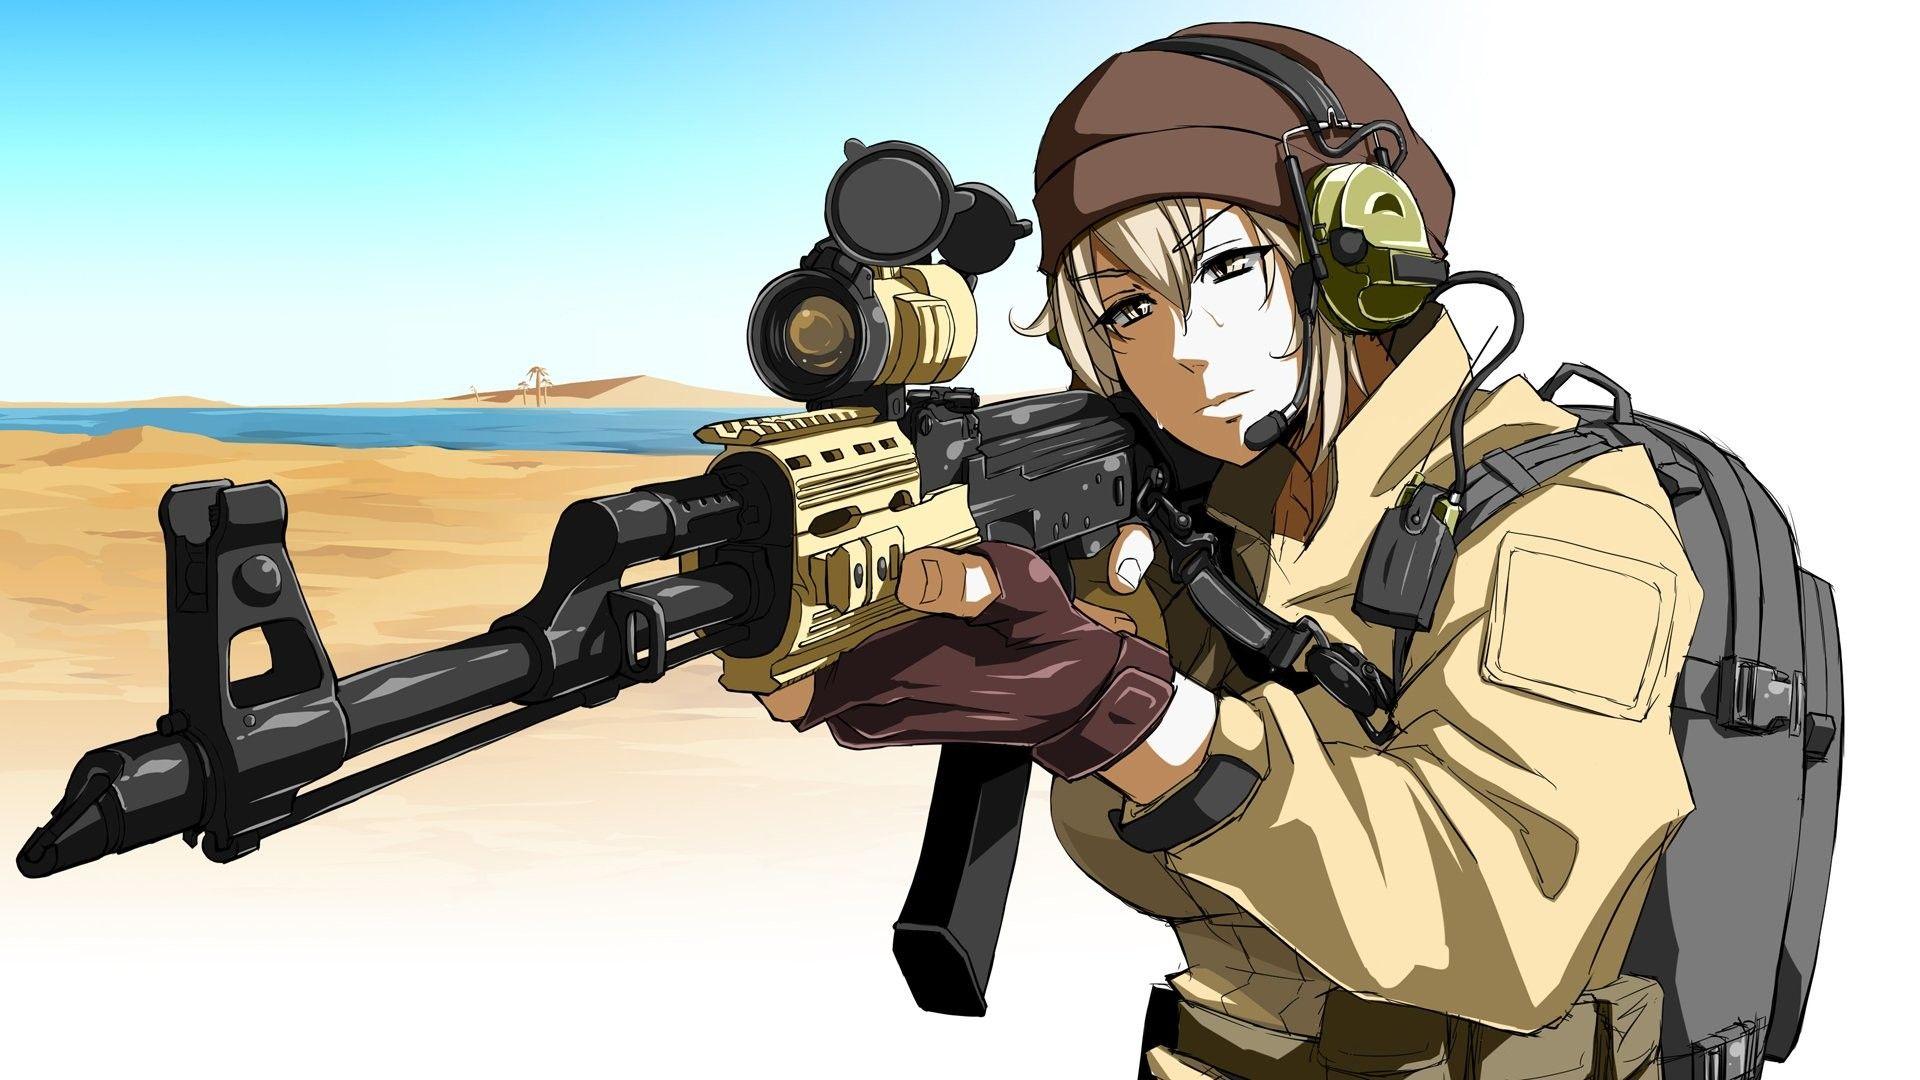 Anime Boy Gun Wallpapers - Top Free Anime Boy Gun ...